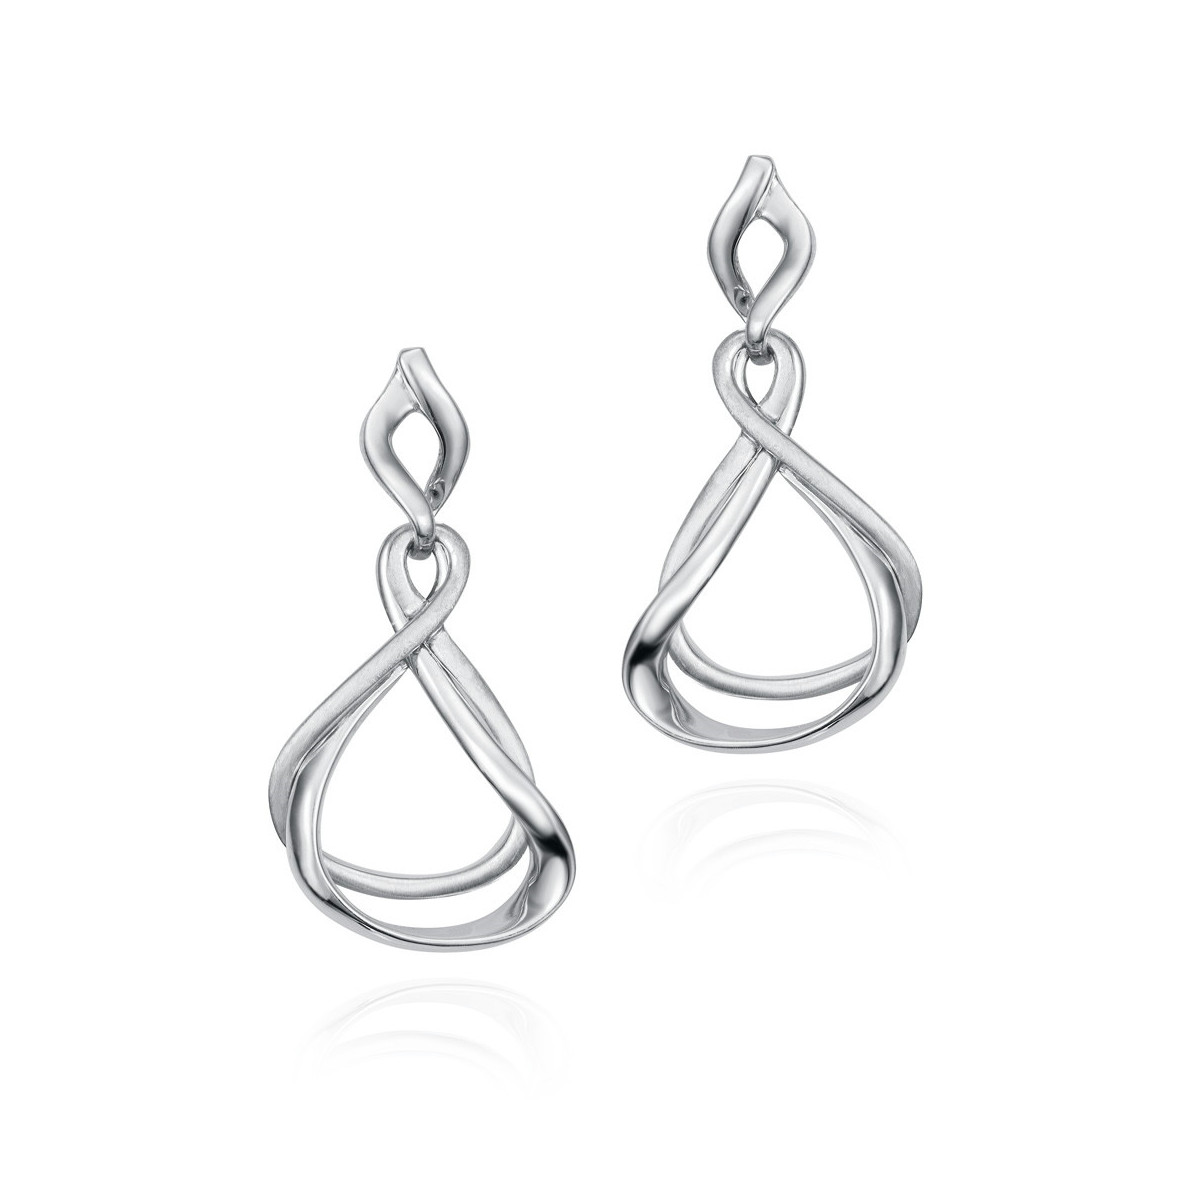 VENICE Earrings in Silver